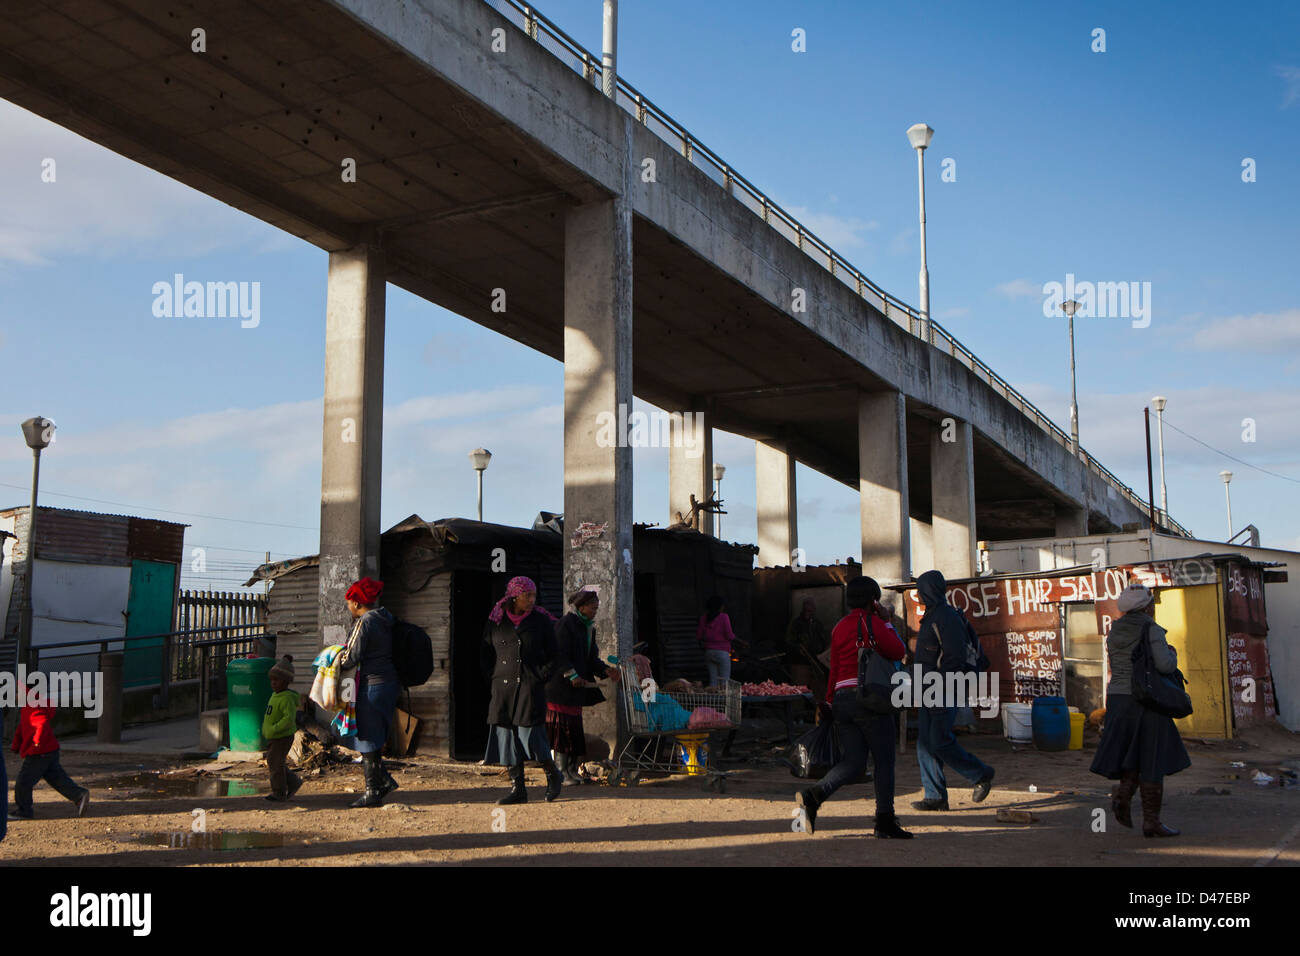 Scène de rue à Philippes township, Cape Town, Afrique du Sud. Les gens marchent autour de la passage sous l'après-midi. Banque D'Images